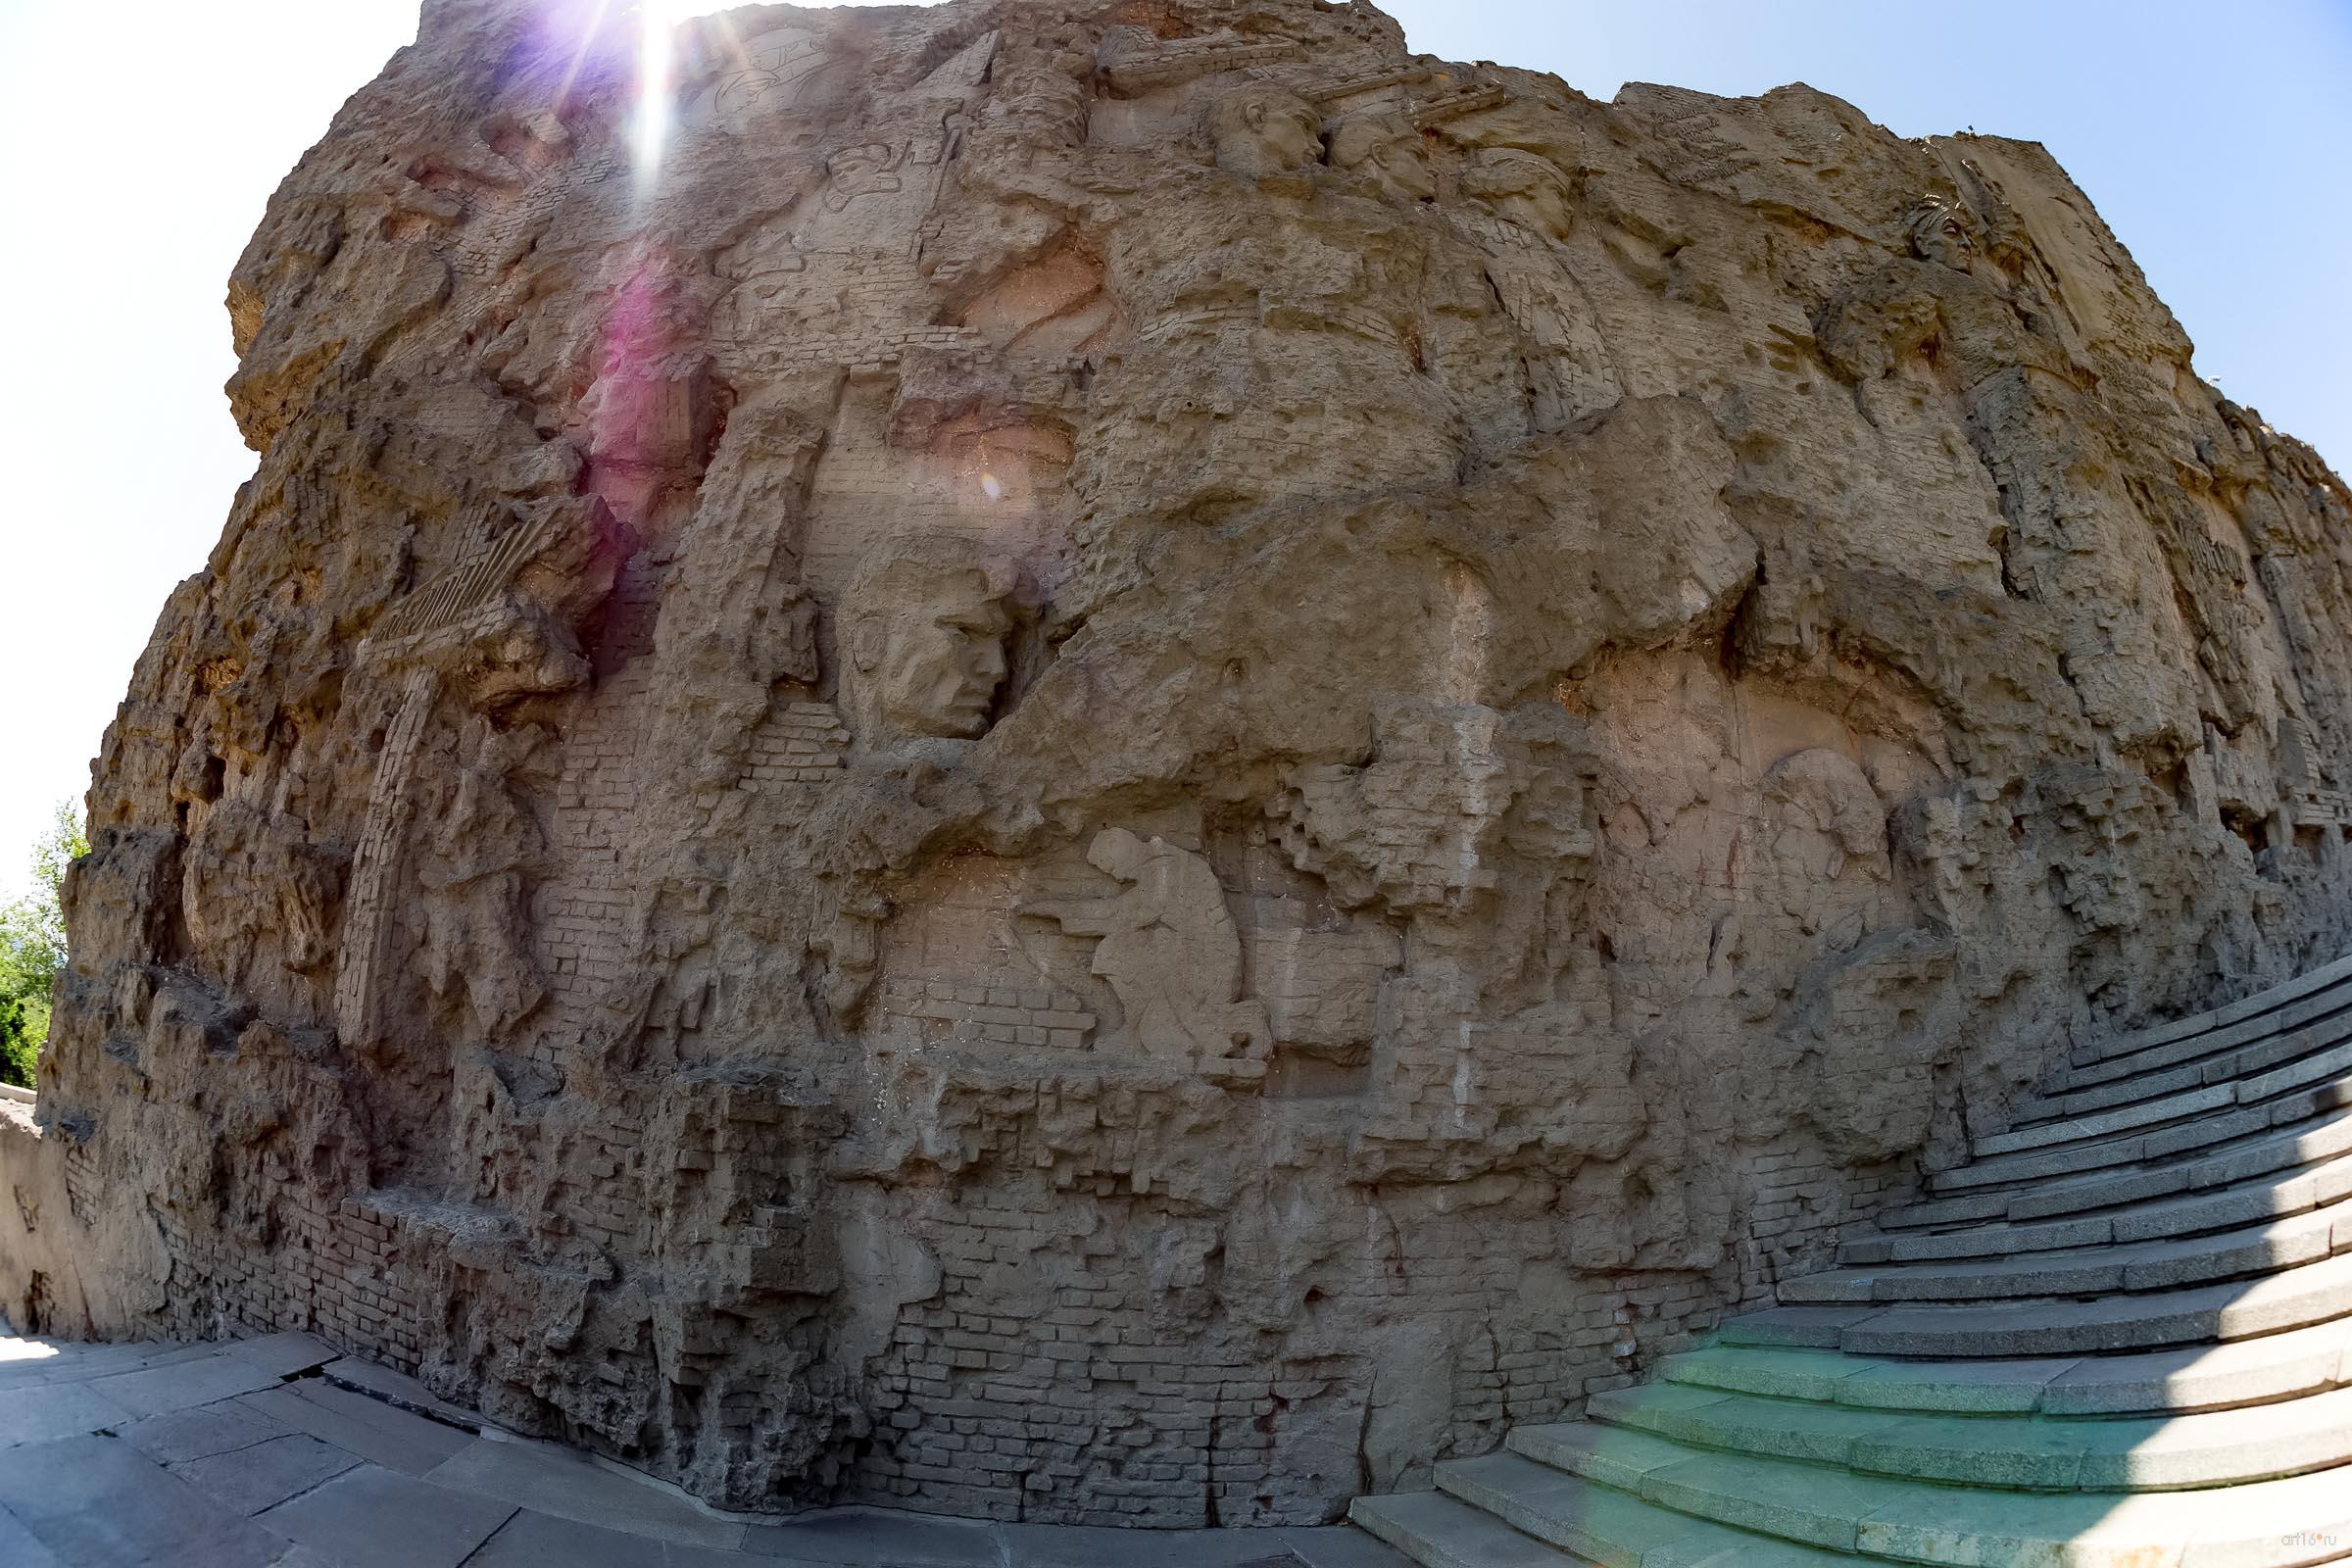  Стены-руины на Мамаевом кургане в форме горельефа::Волгогорад. 2015